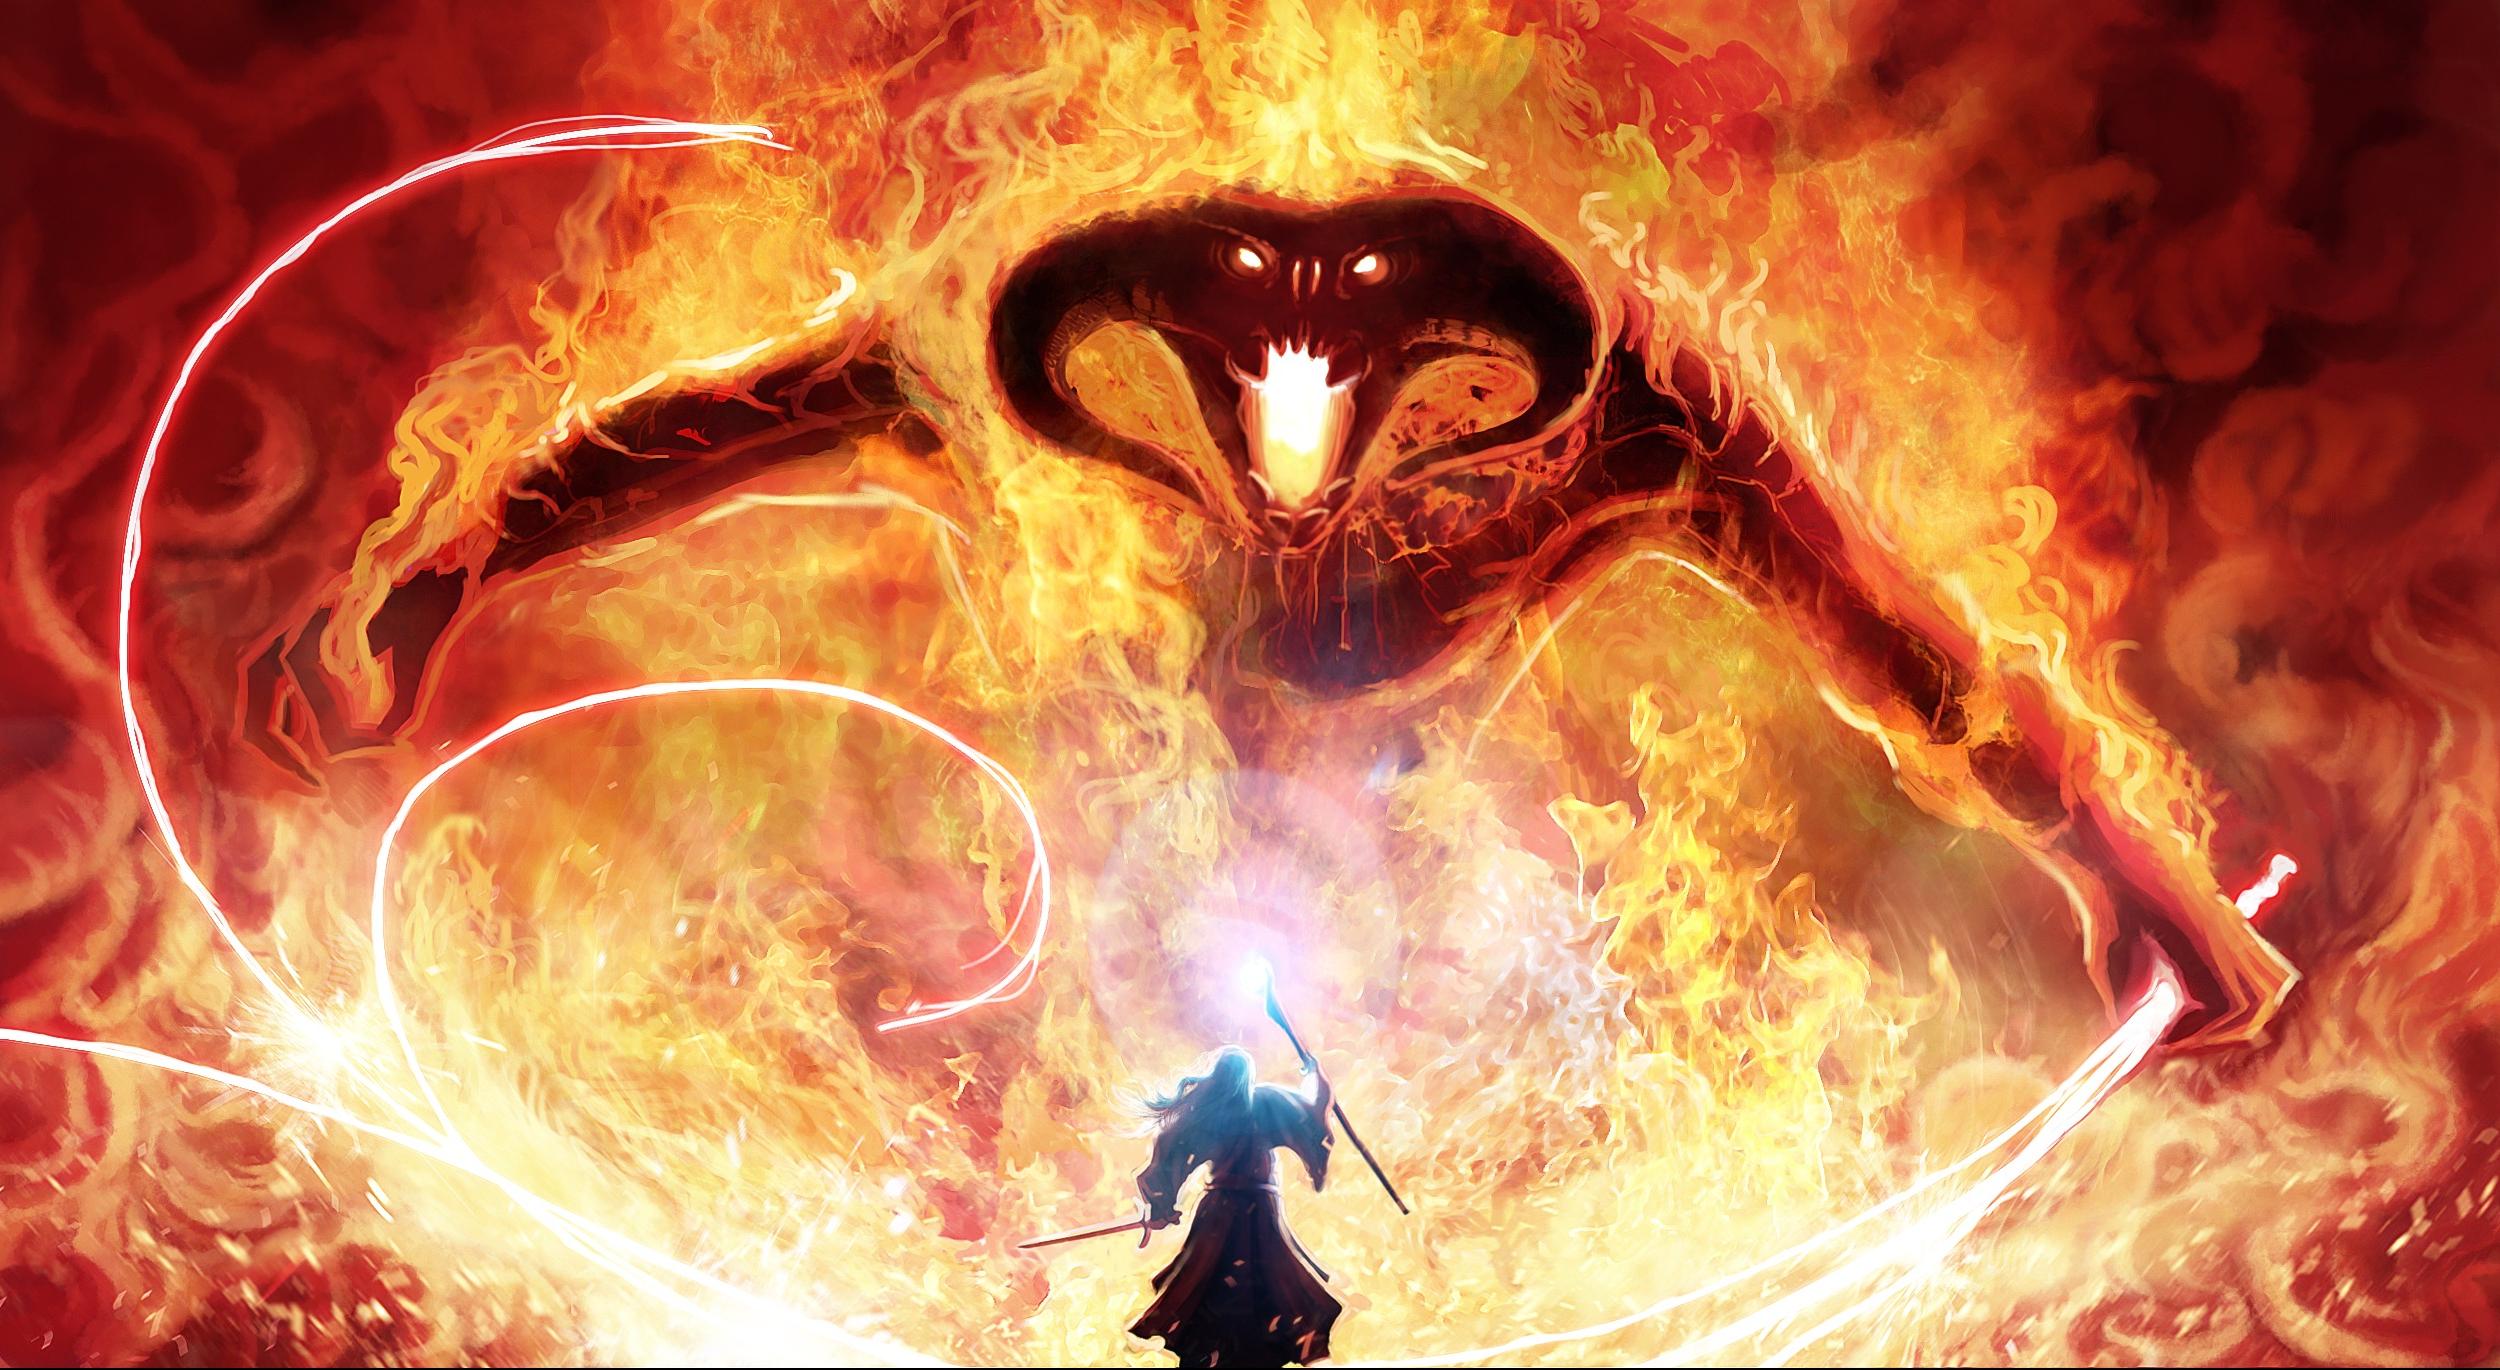 Baldrog vs Gandalf in Flame Wallpaper